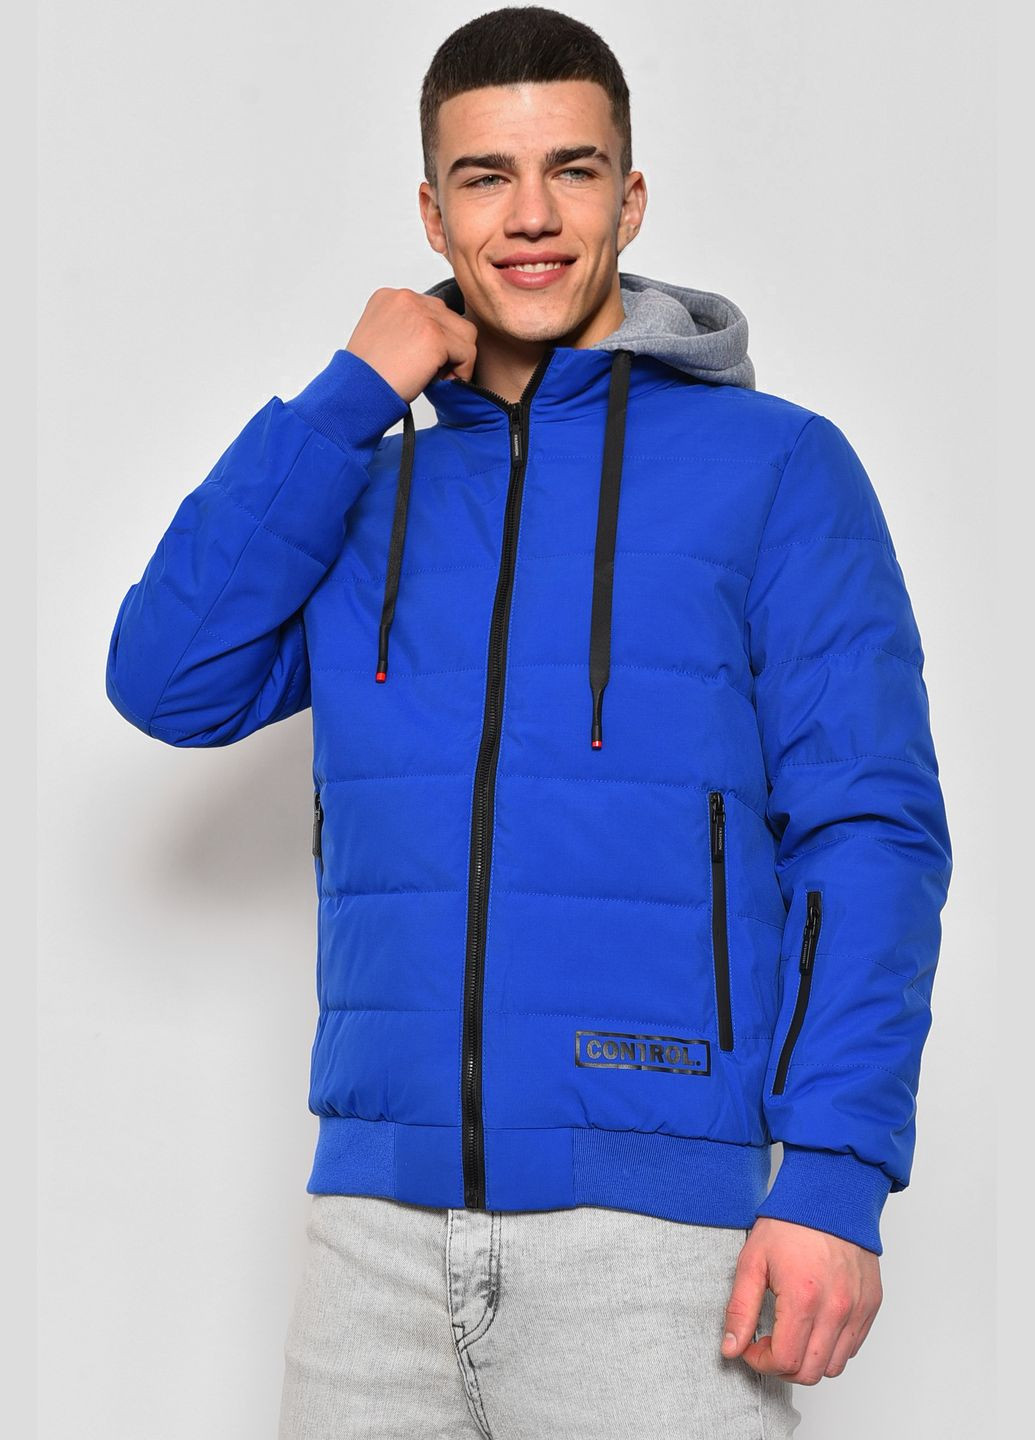 Синяя демисезонная куртка мужская демисезонная синего цвета Let's Shop